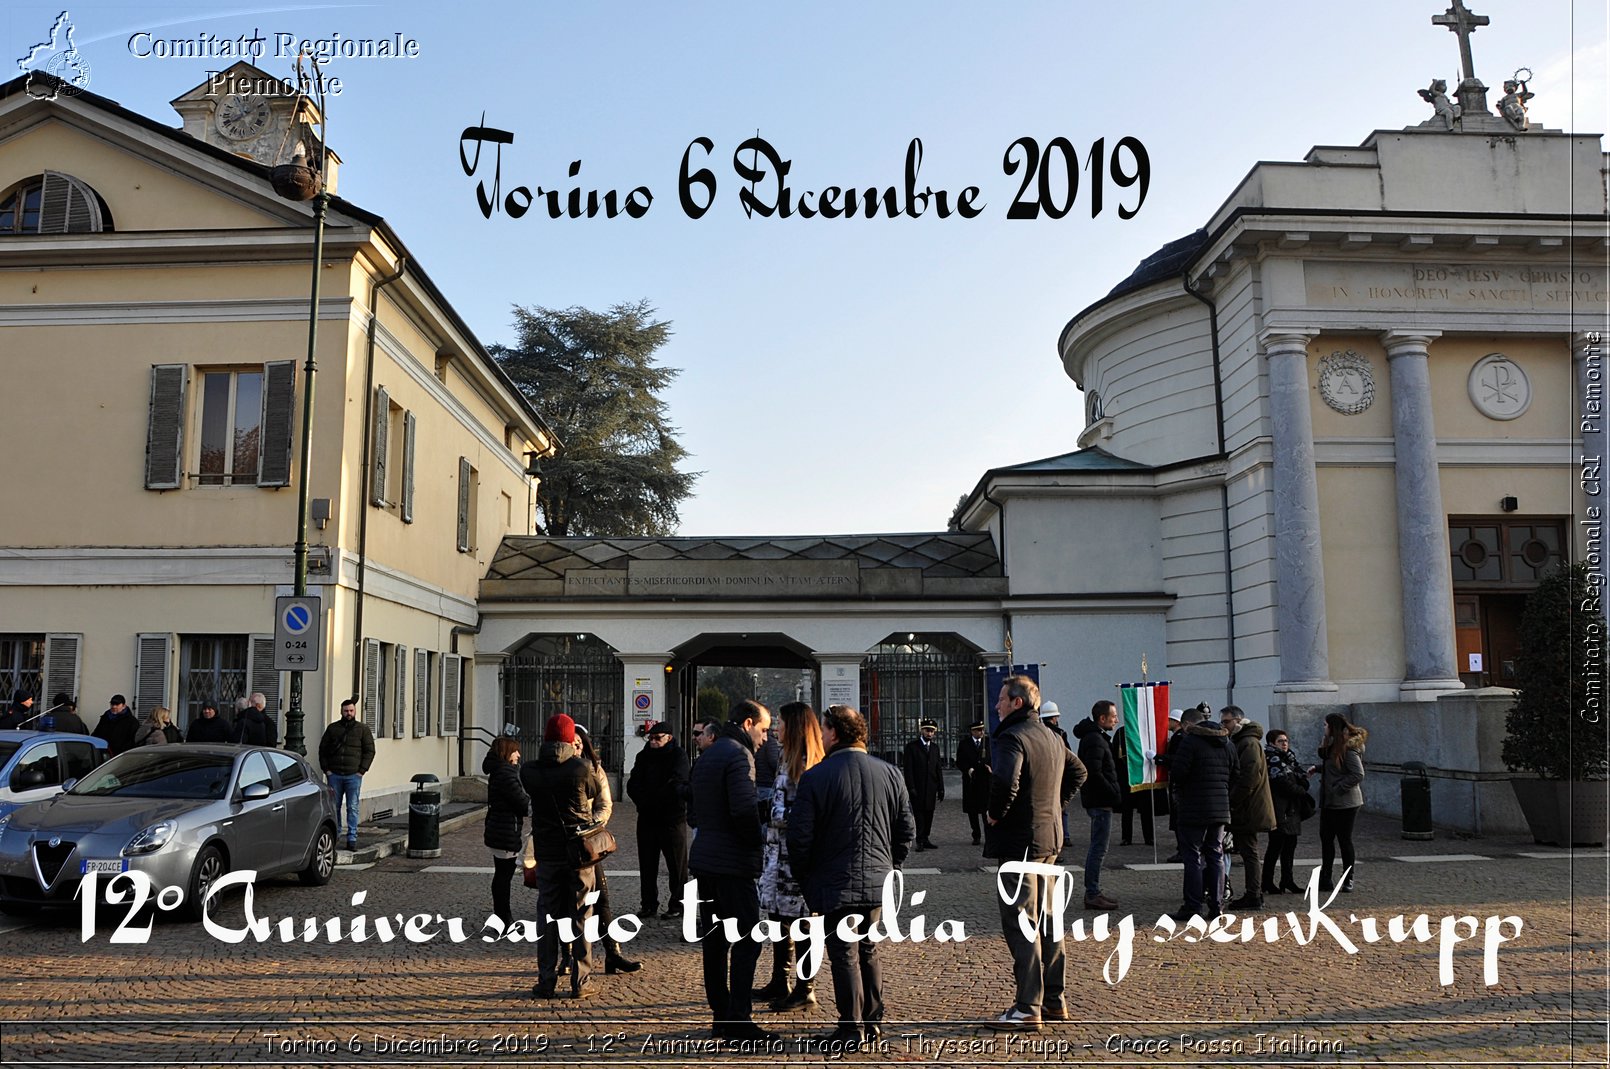 Torino 6 Dicembre 2019 - 12 Anniversario tragedia Thyssen Krupp - Croce Rossa Italiana